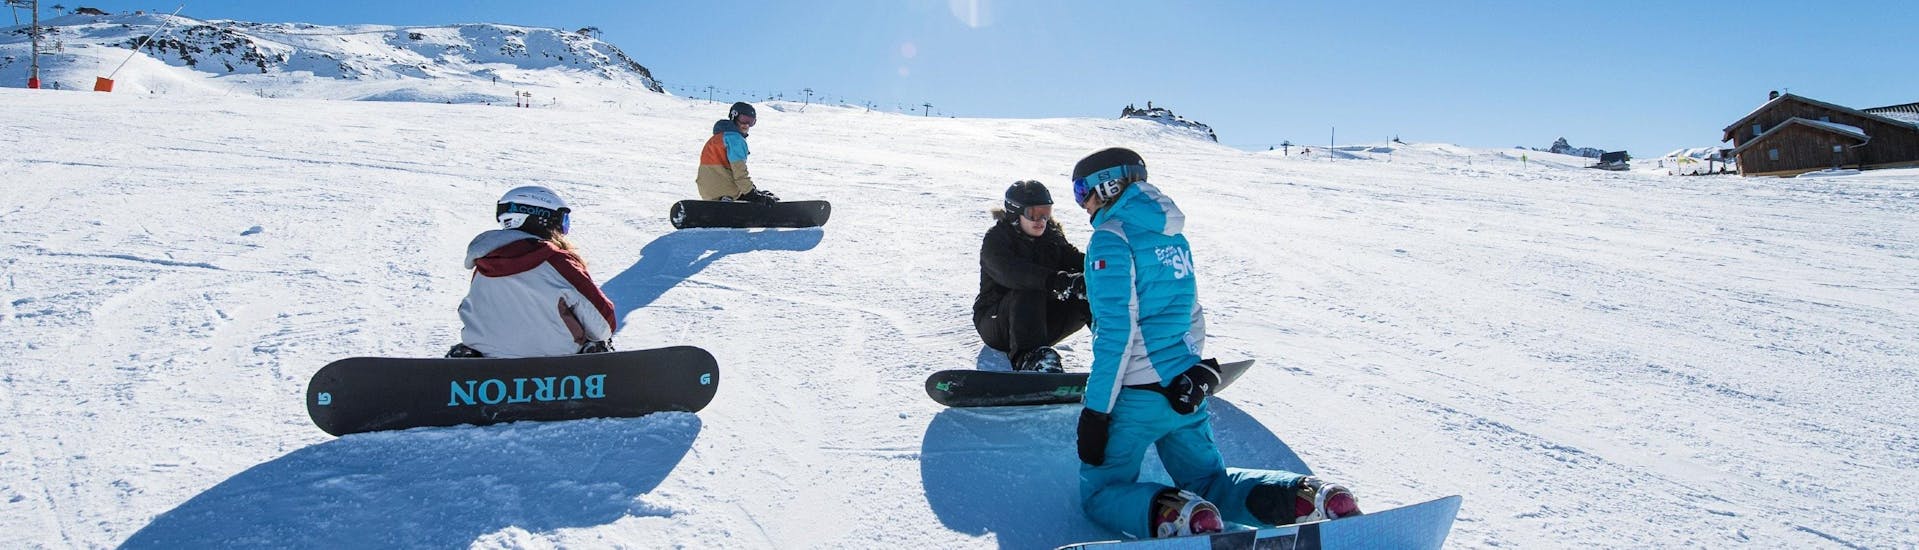 Un moniteur de snowboard de l'ESI Ski Family explique une technique à ses élèves pendant des cours de snowboard dès 15 ans pour tous niveaux à Chamonix. 